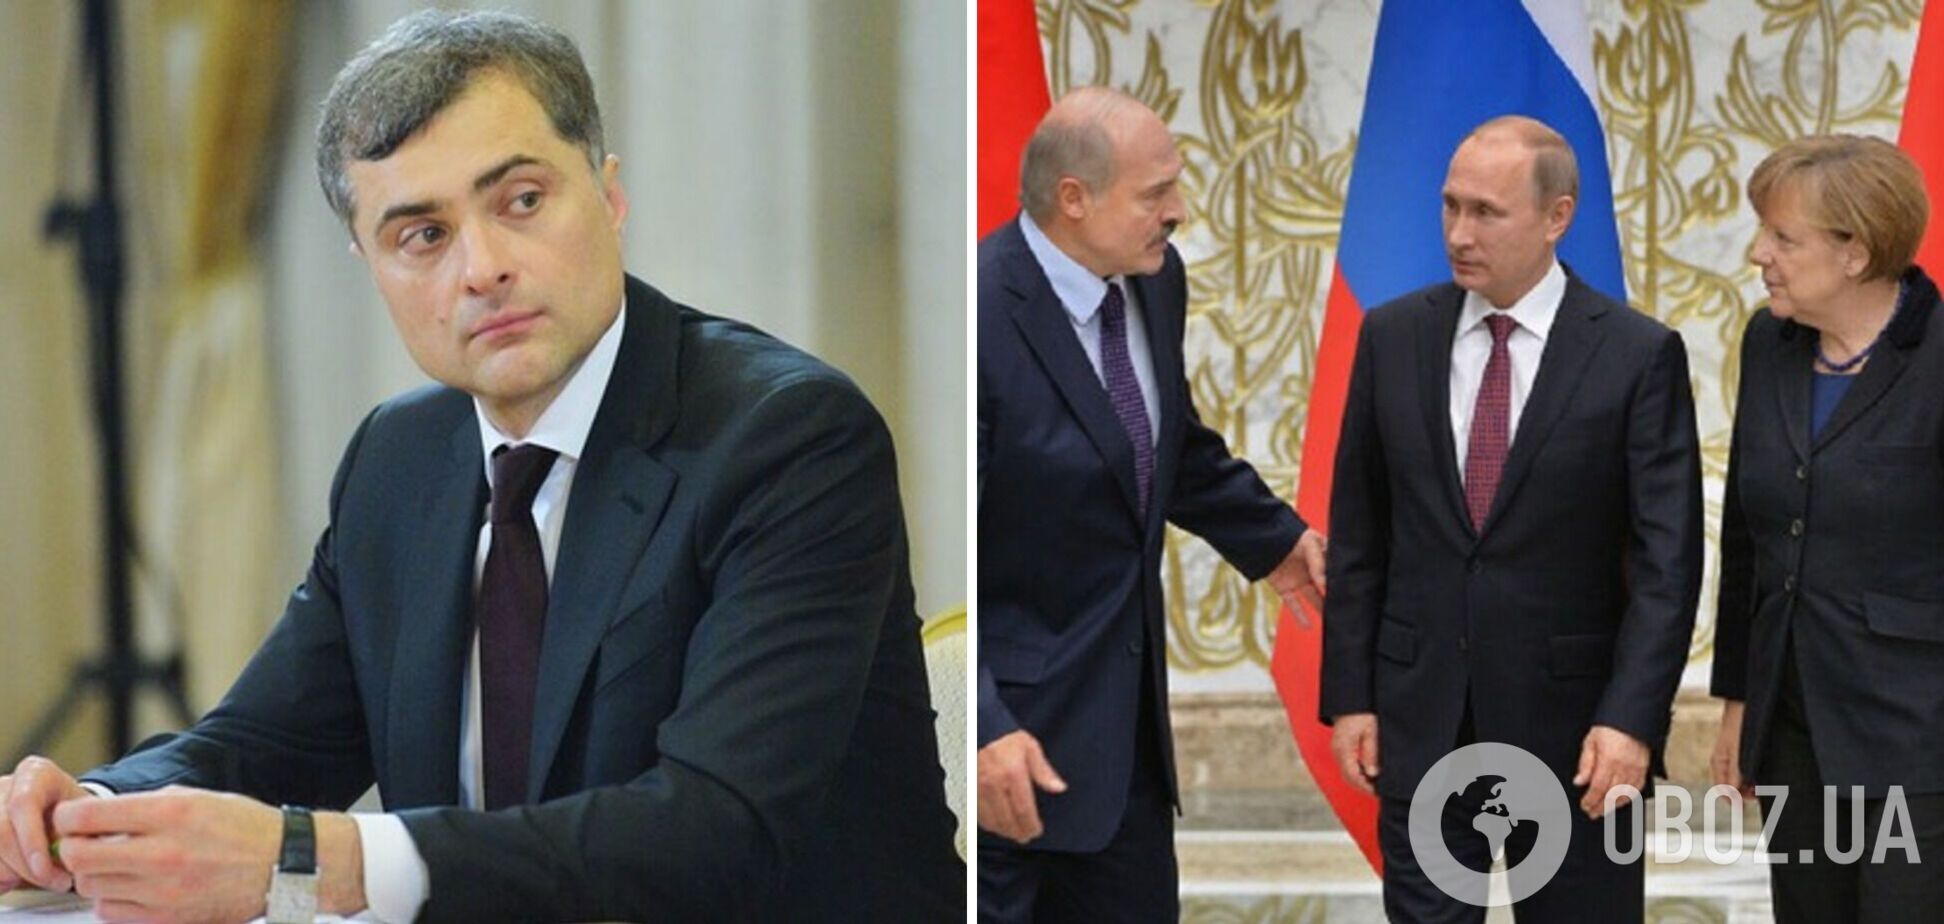 Сурков сделал признание по поводу Минских соглашений и назвал действия РФ в Украине 'эффективными'